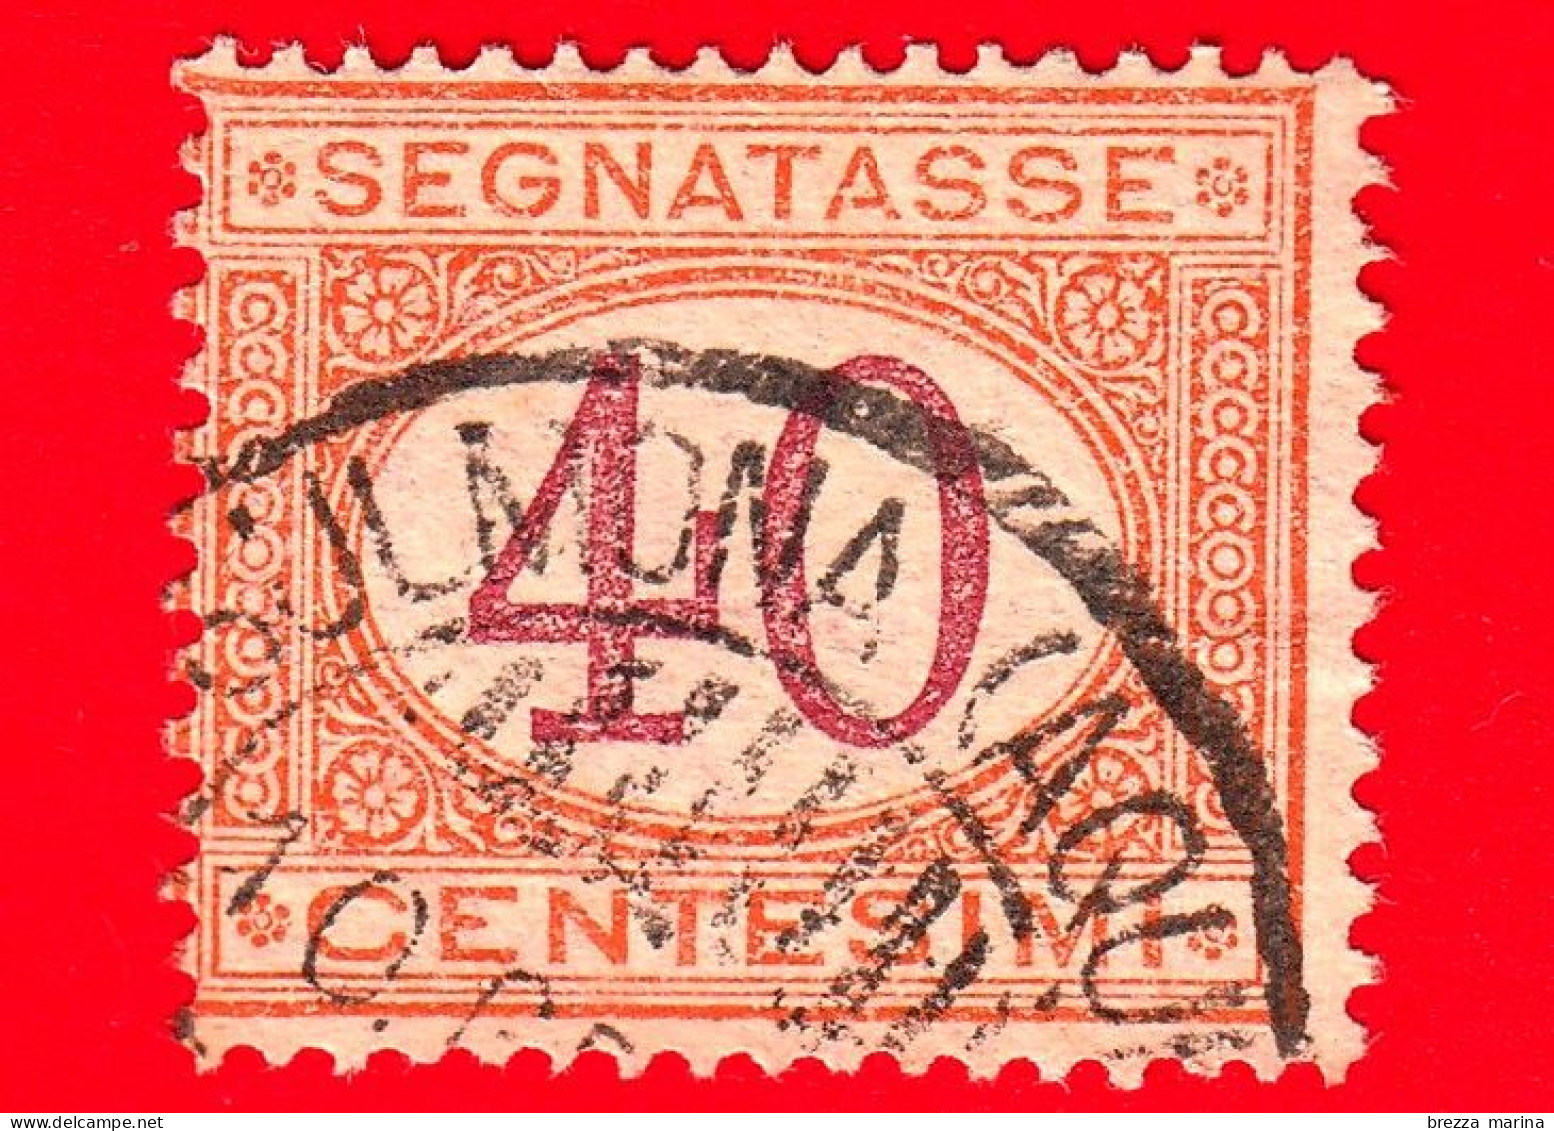 ITALIA - Usato -  1870 - 1890 - Segnatasse - Cifra Entro Un Ovale - 40 C. - Segnatasse